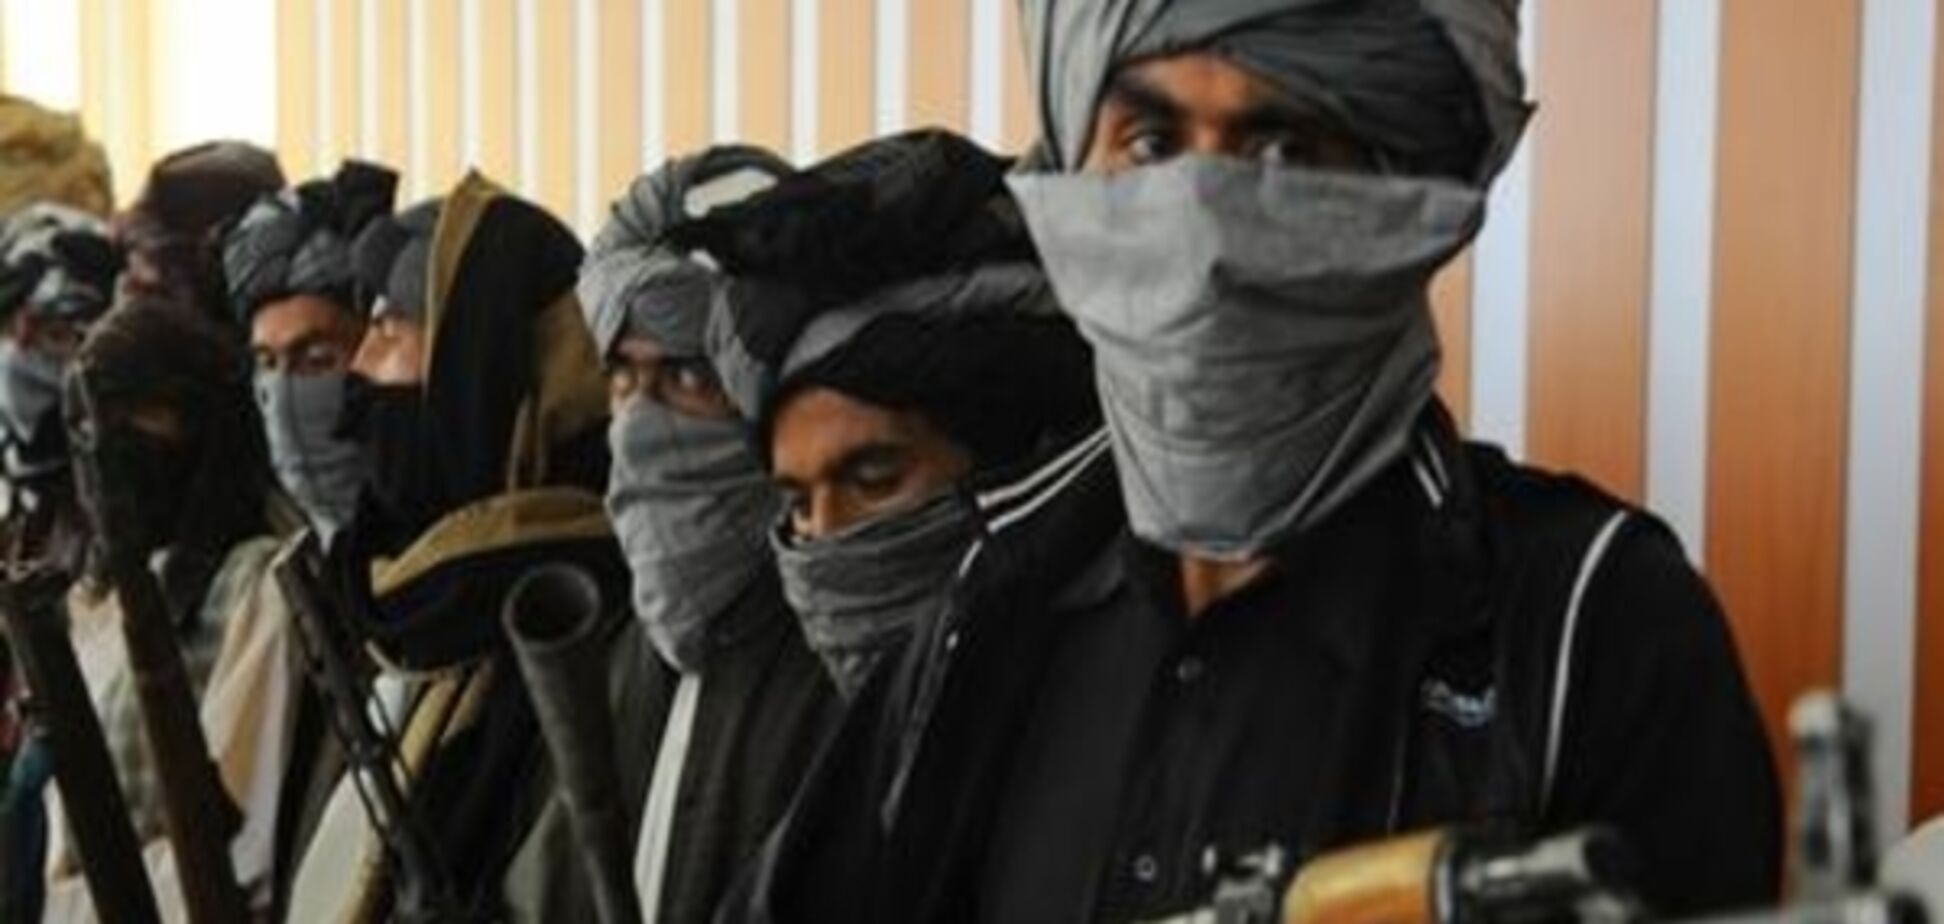 У ФРН арештували афганця, підозрюваного у вбивстві й причетності до 'Талібану'